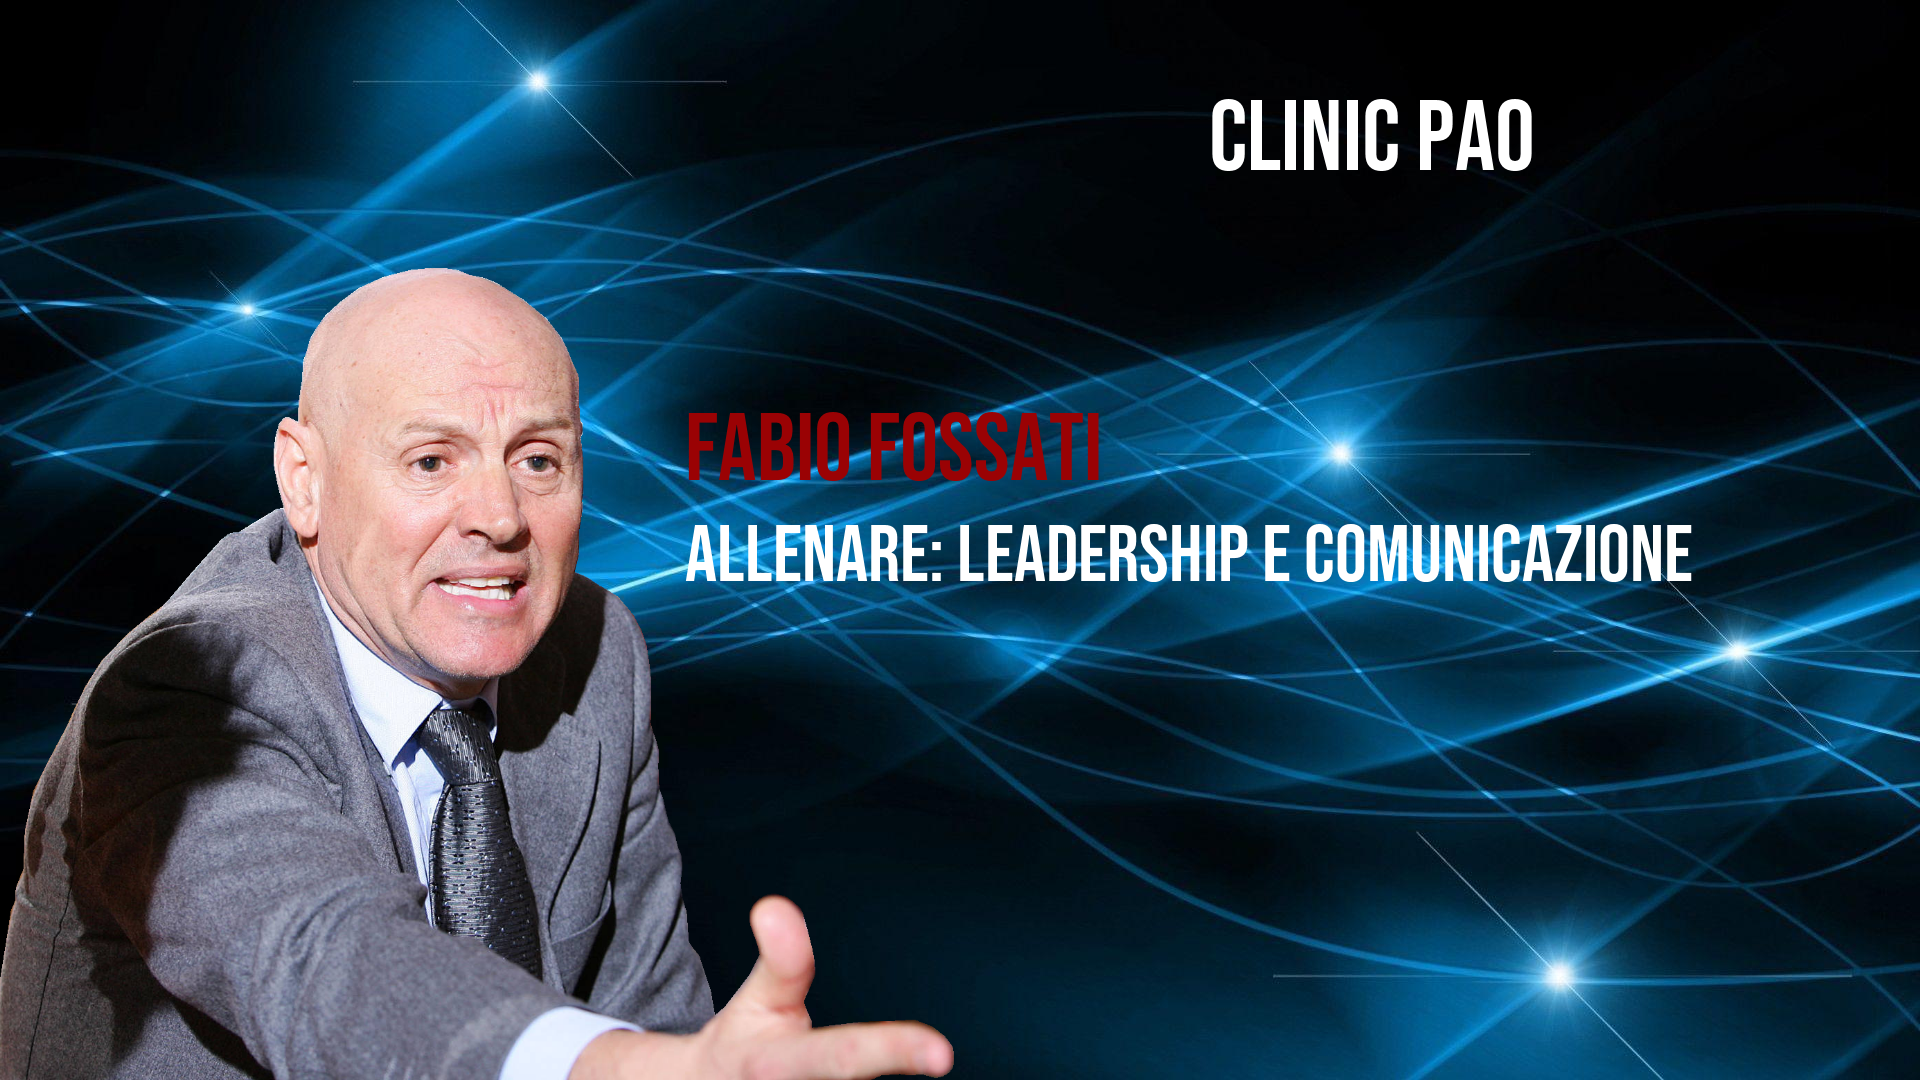 <p>Fabio Fossati allenare - Allenare: leadership e comunicazione</p>
